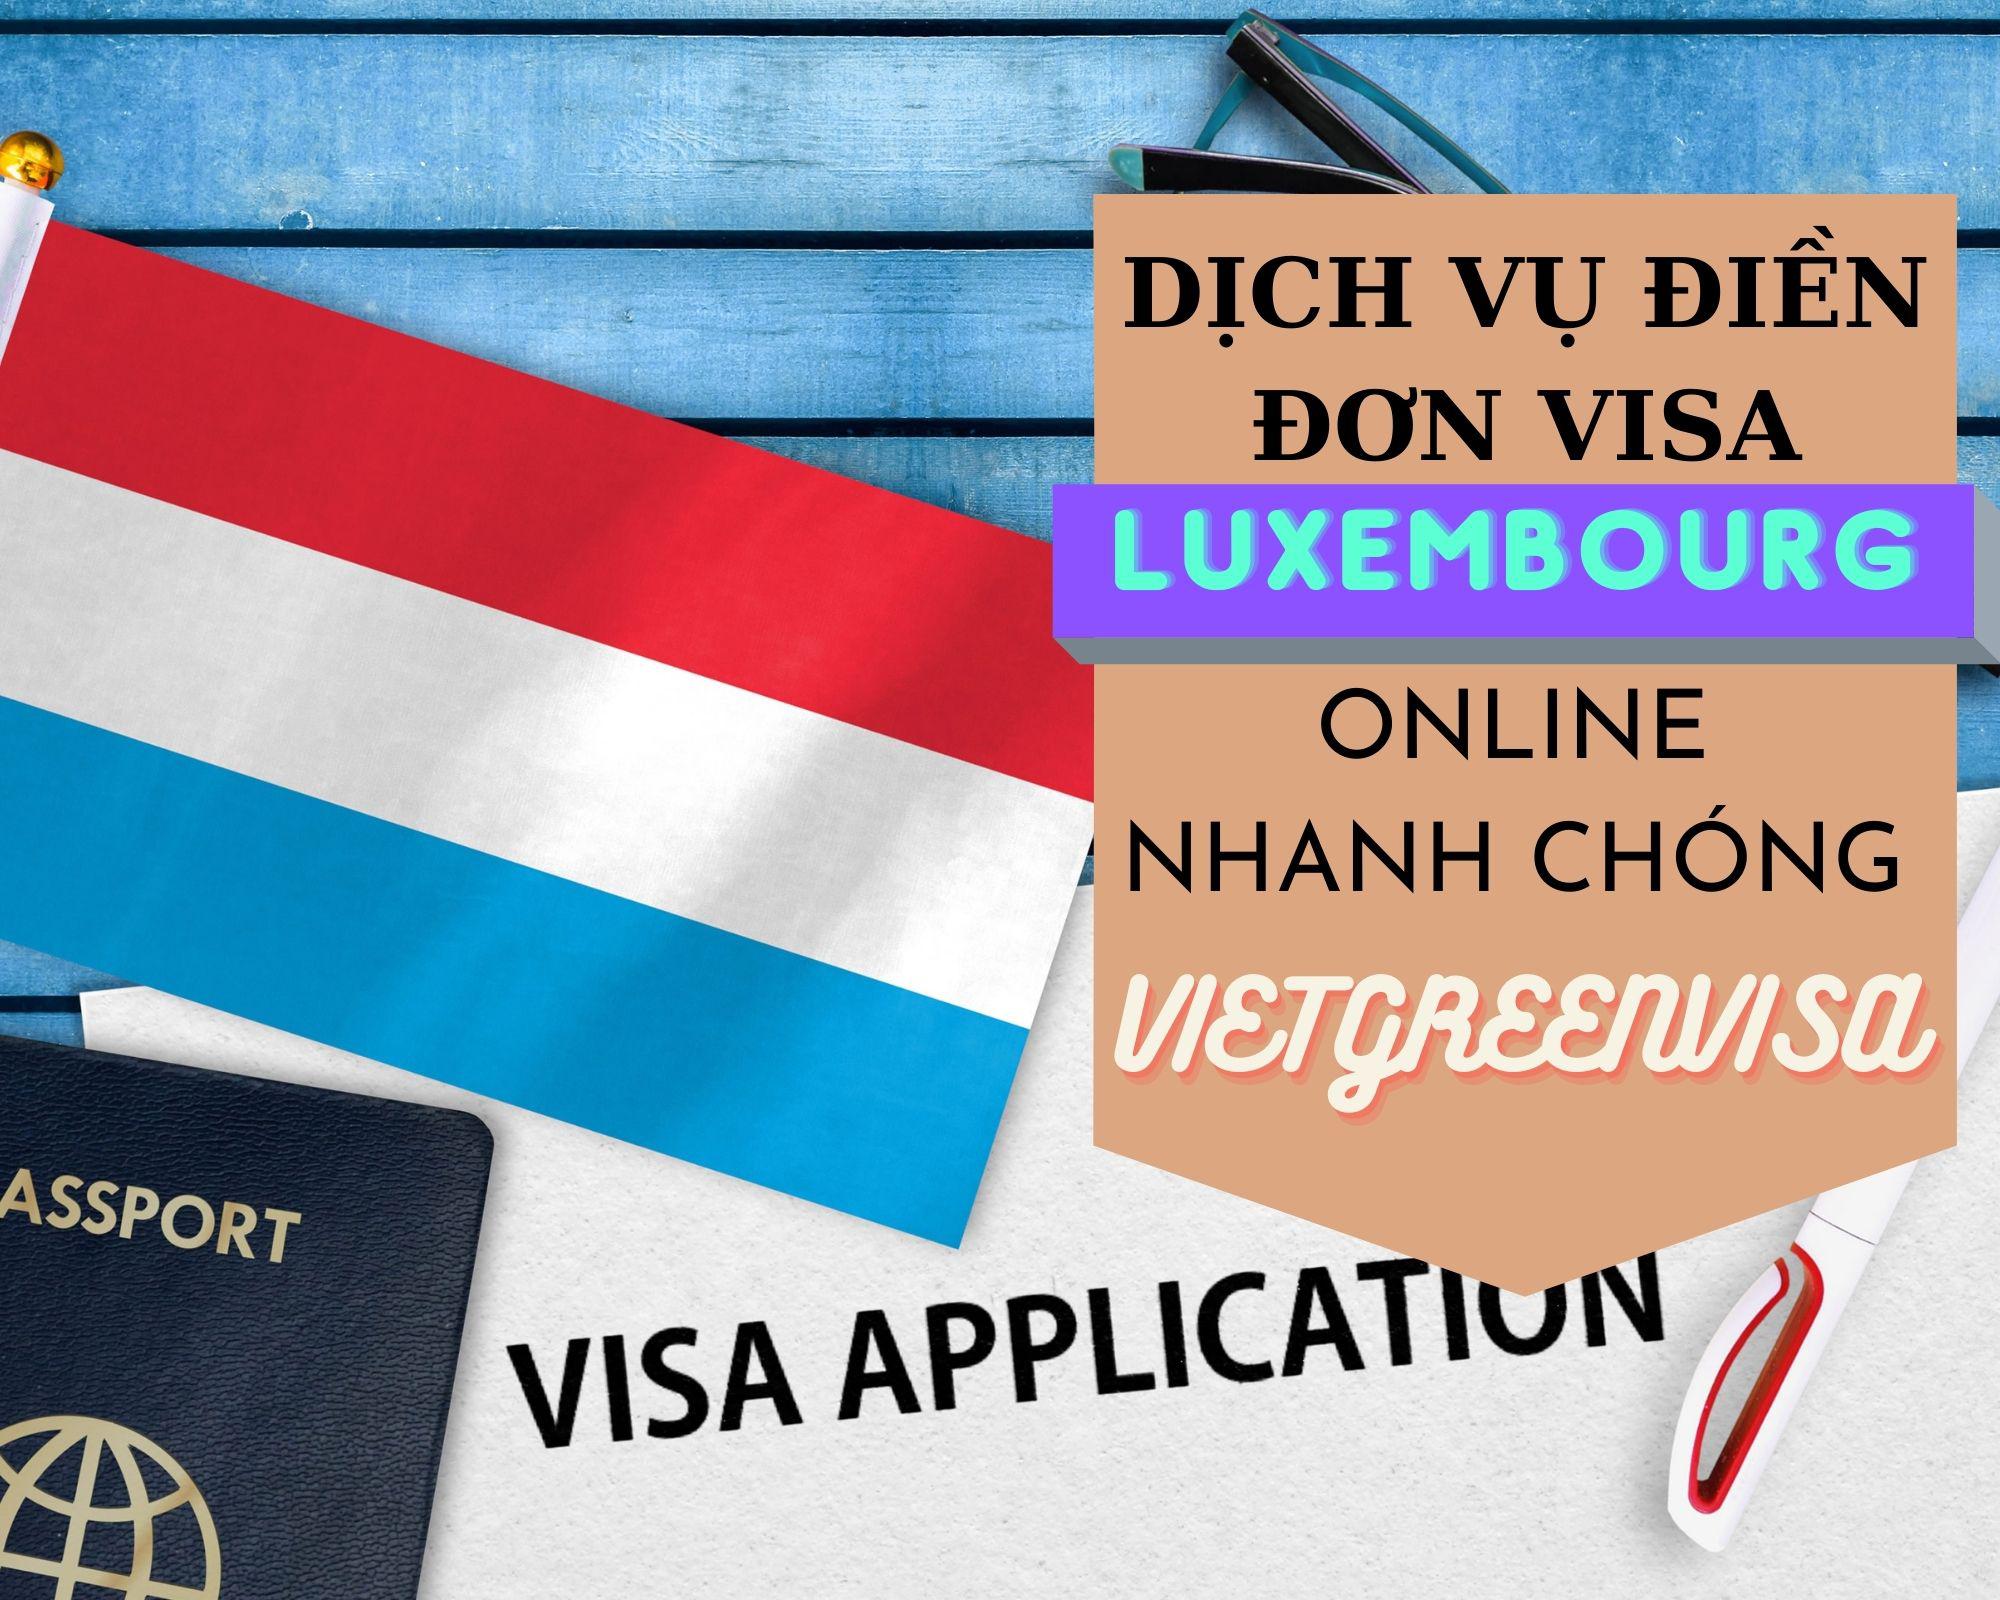 Dịch vụ hỗ trợ điền đơn visa Luxembourg online nhanh chóng